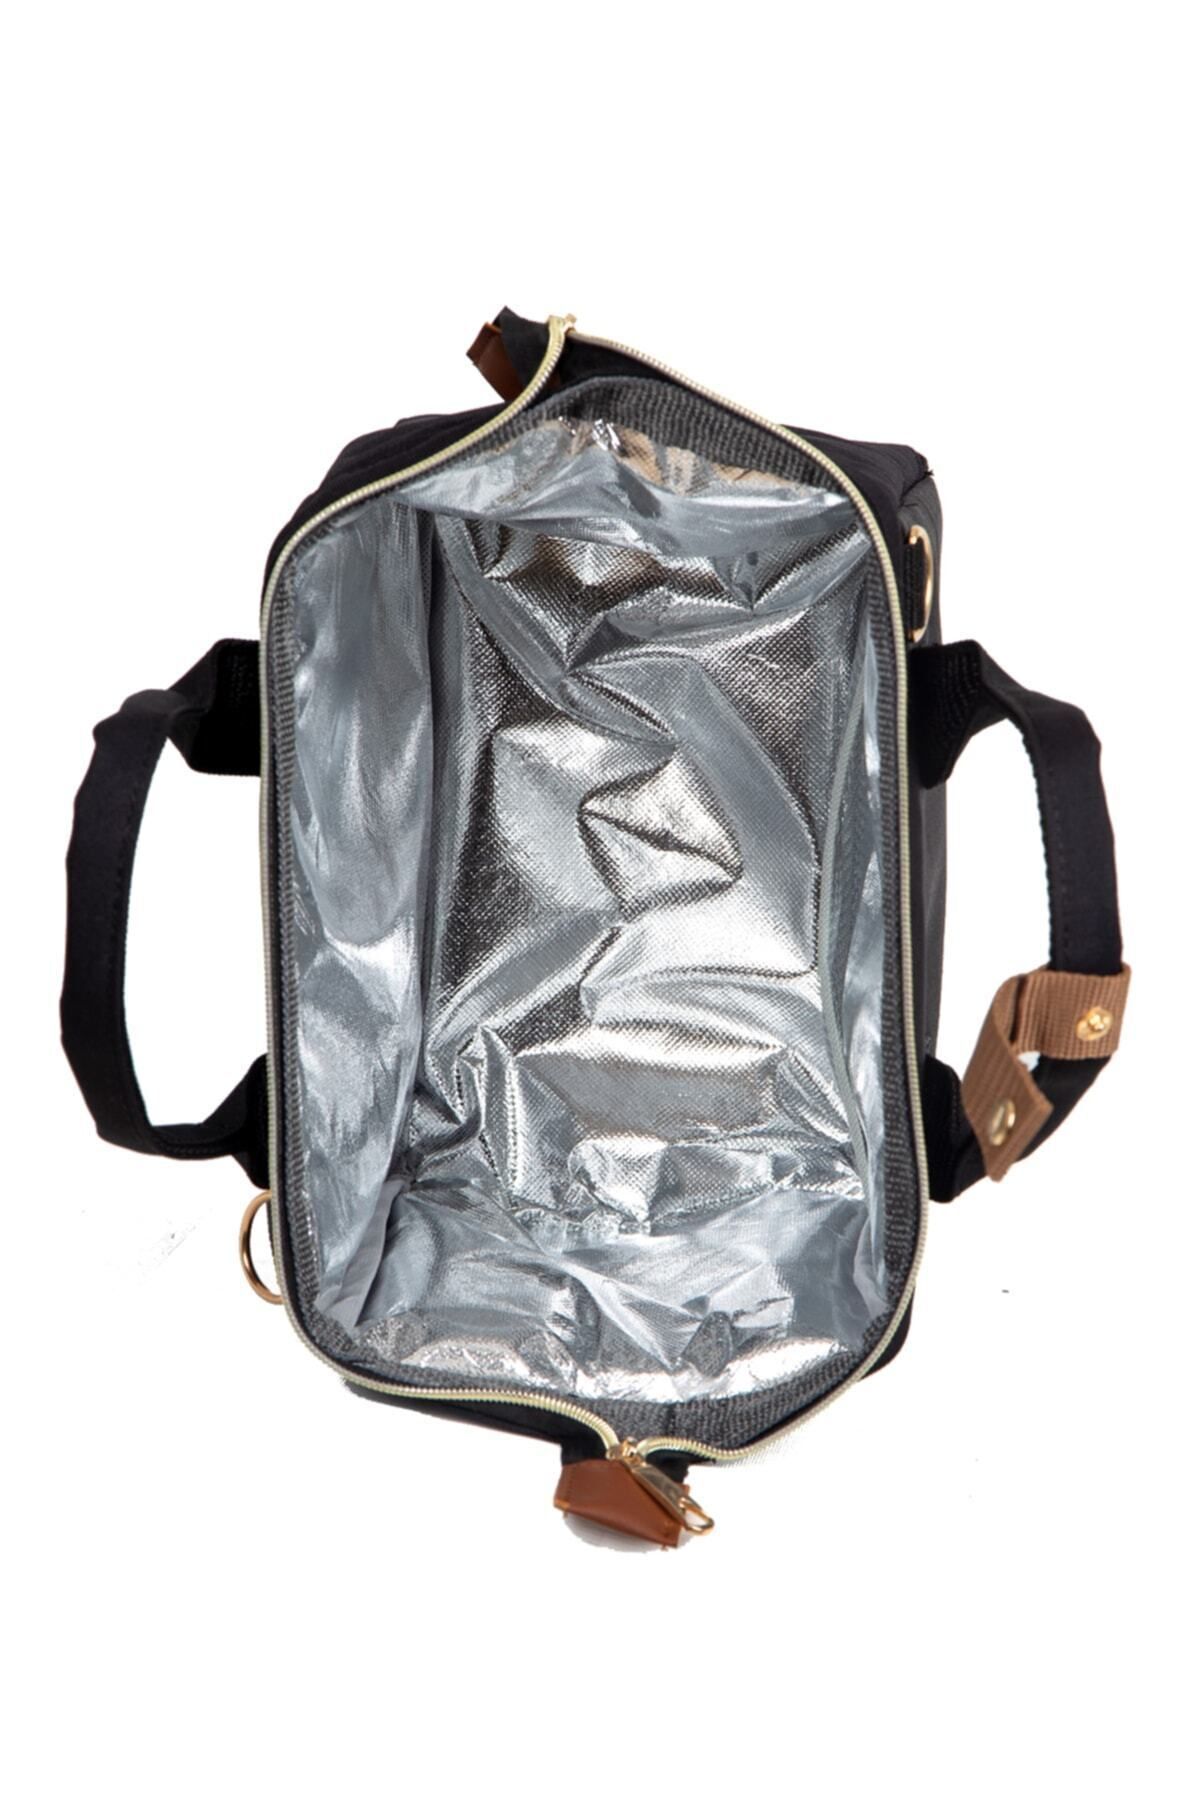 beautiful bag Isı Yalıtımlı Su Geçirmez Termal Çanta Yemek Taşıma Beslenme Çantası Siyah